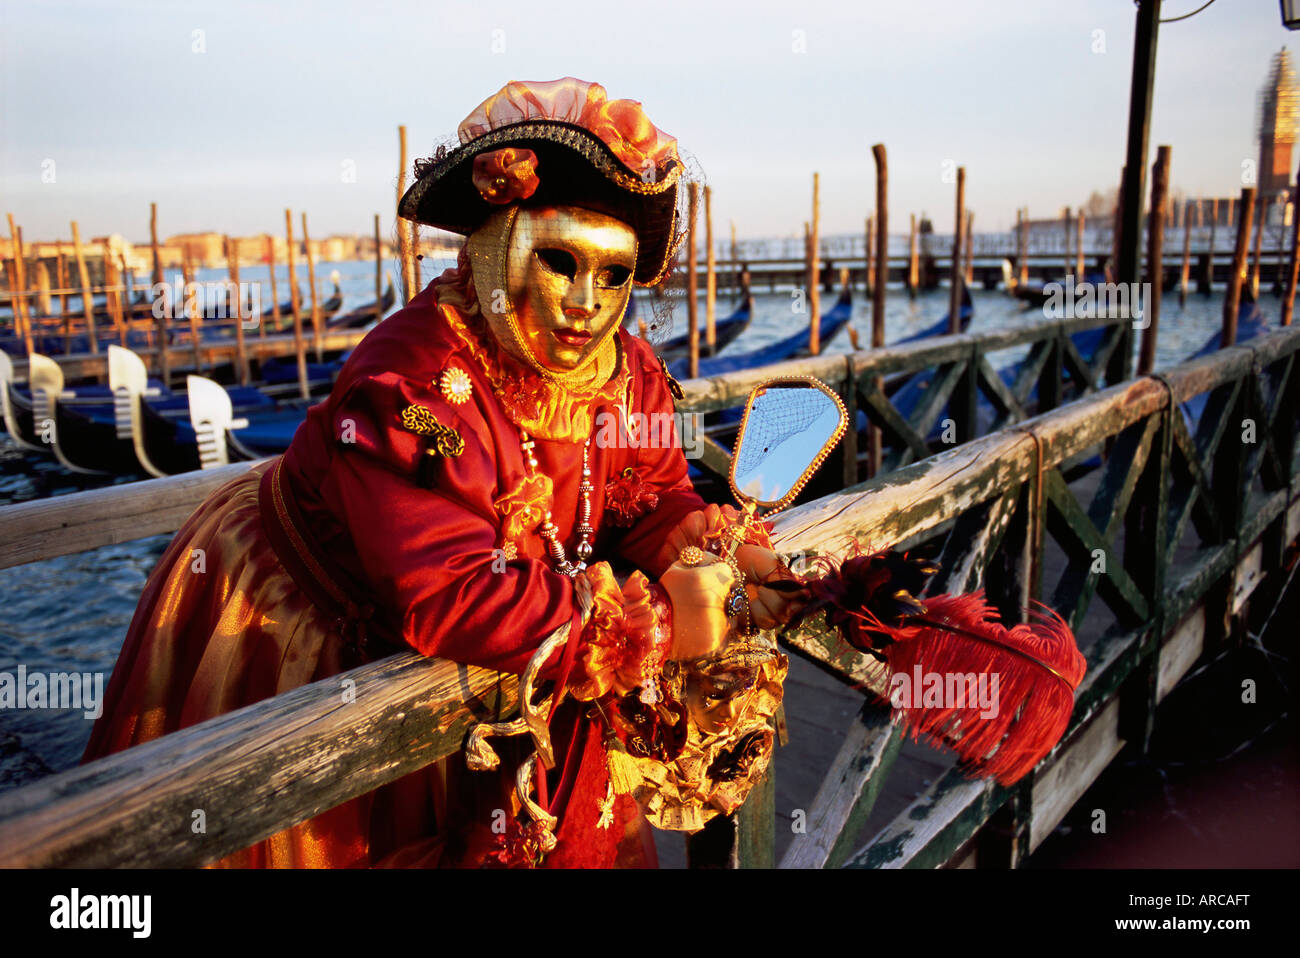 Ritratto di una persona vestita in maschera di carnevale e il costume di carnevale di Venezia, Venezia, Veneto, Italia, Europa Foto Stock